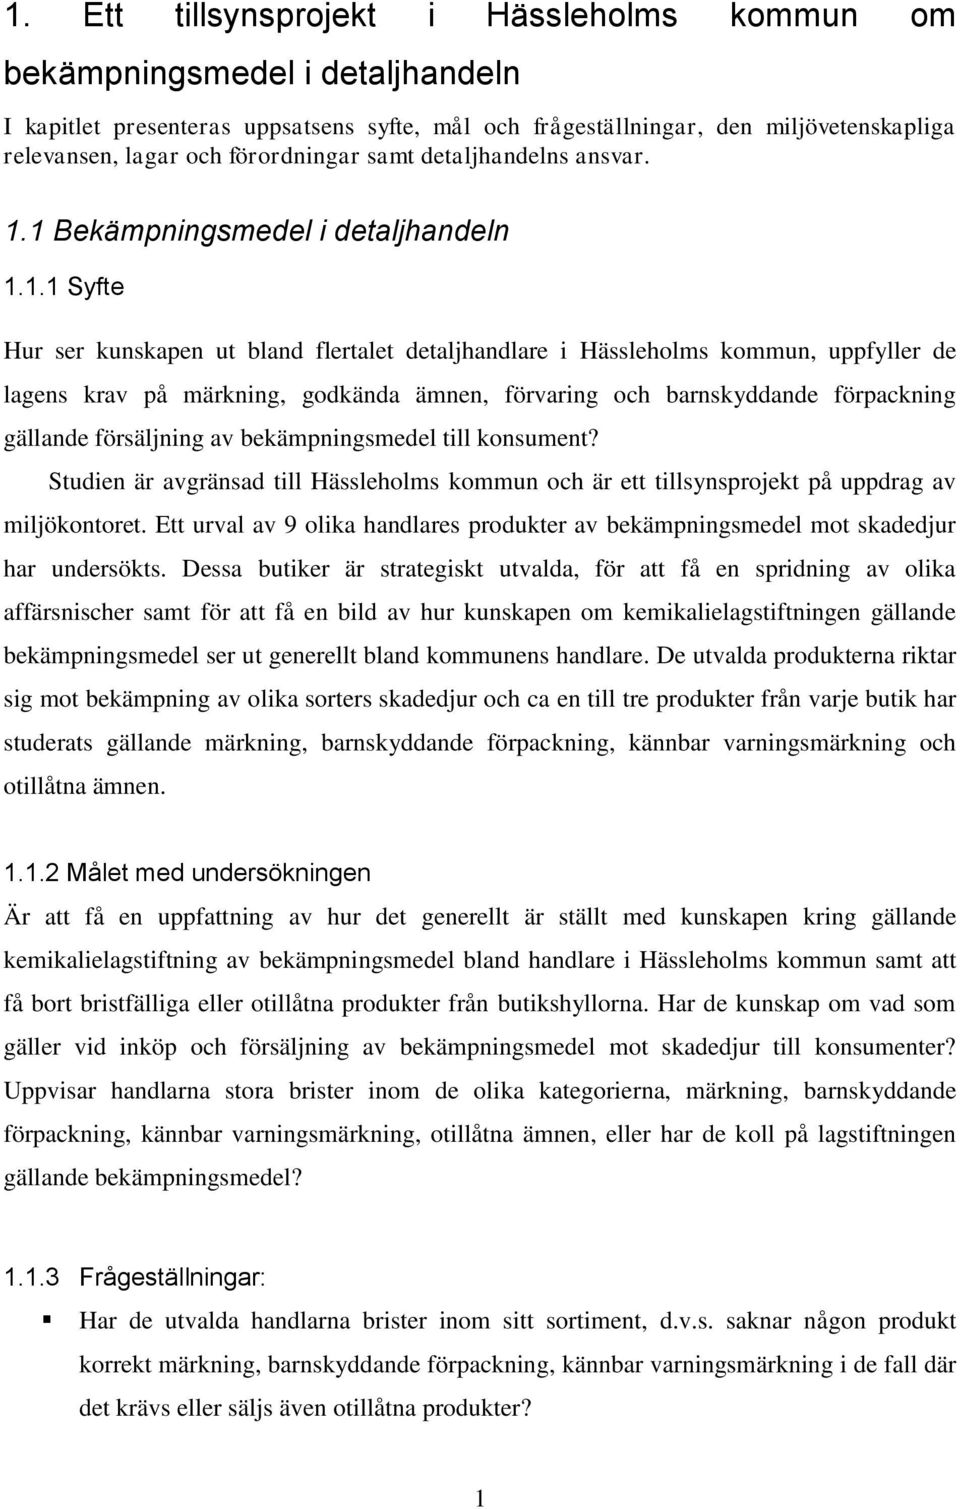 1 Bekämpningsmedel i detaljhandeln 1.1.1 Syfte Hur ser kunskapen ut bland flertalet detaljhandlare i Hässleholms kommun, uppfyller de lagens krav på märkning, godkända ämnen, förvaring och